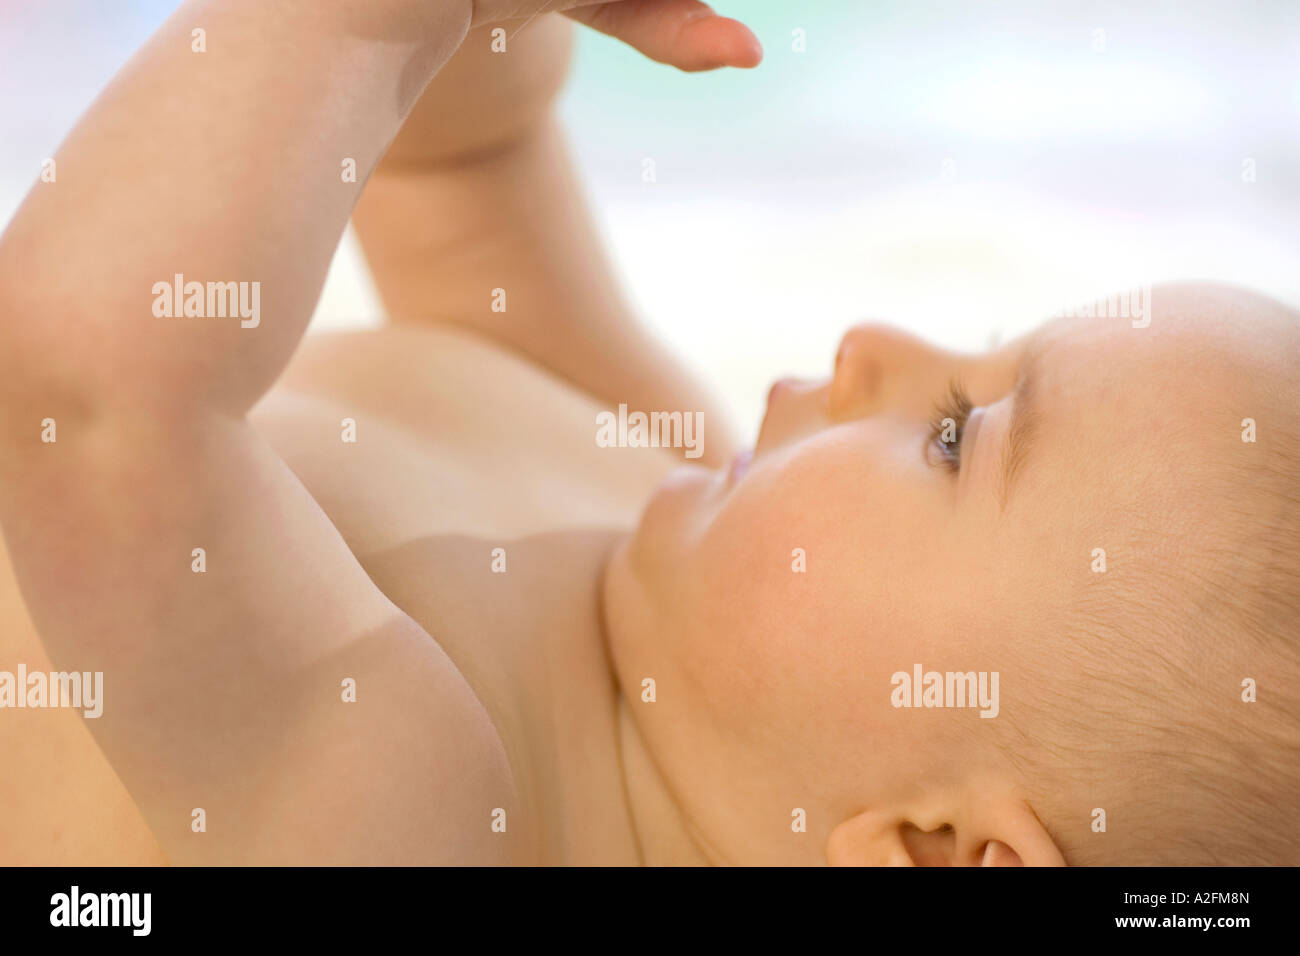 Bébé garçon (6-12 mois) allongé sur le dos, close-up Banque D'Images